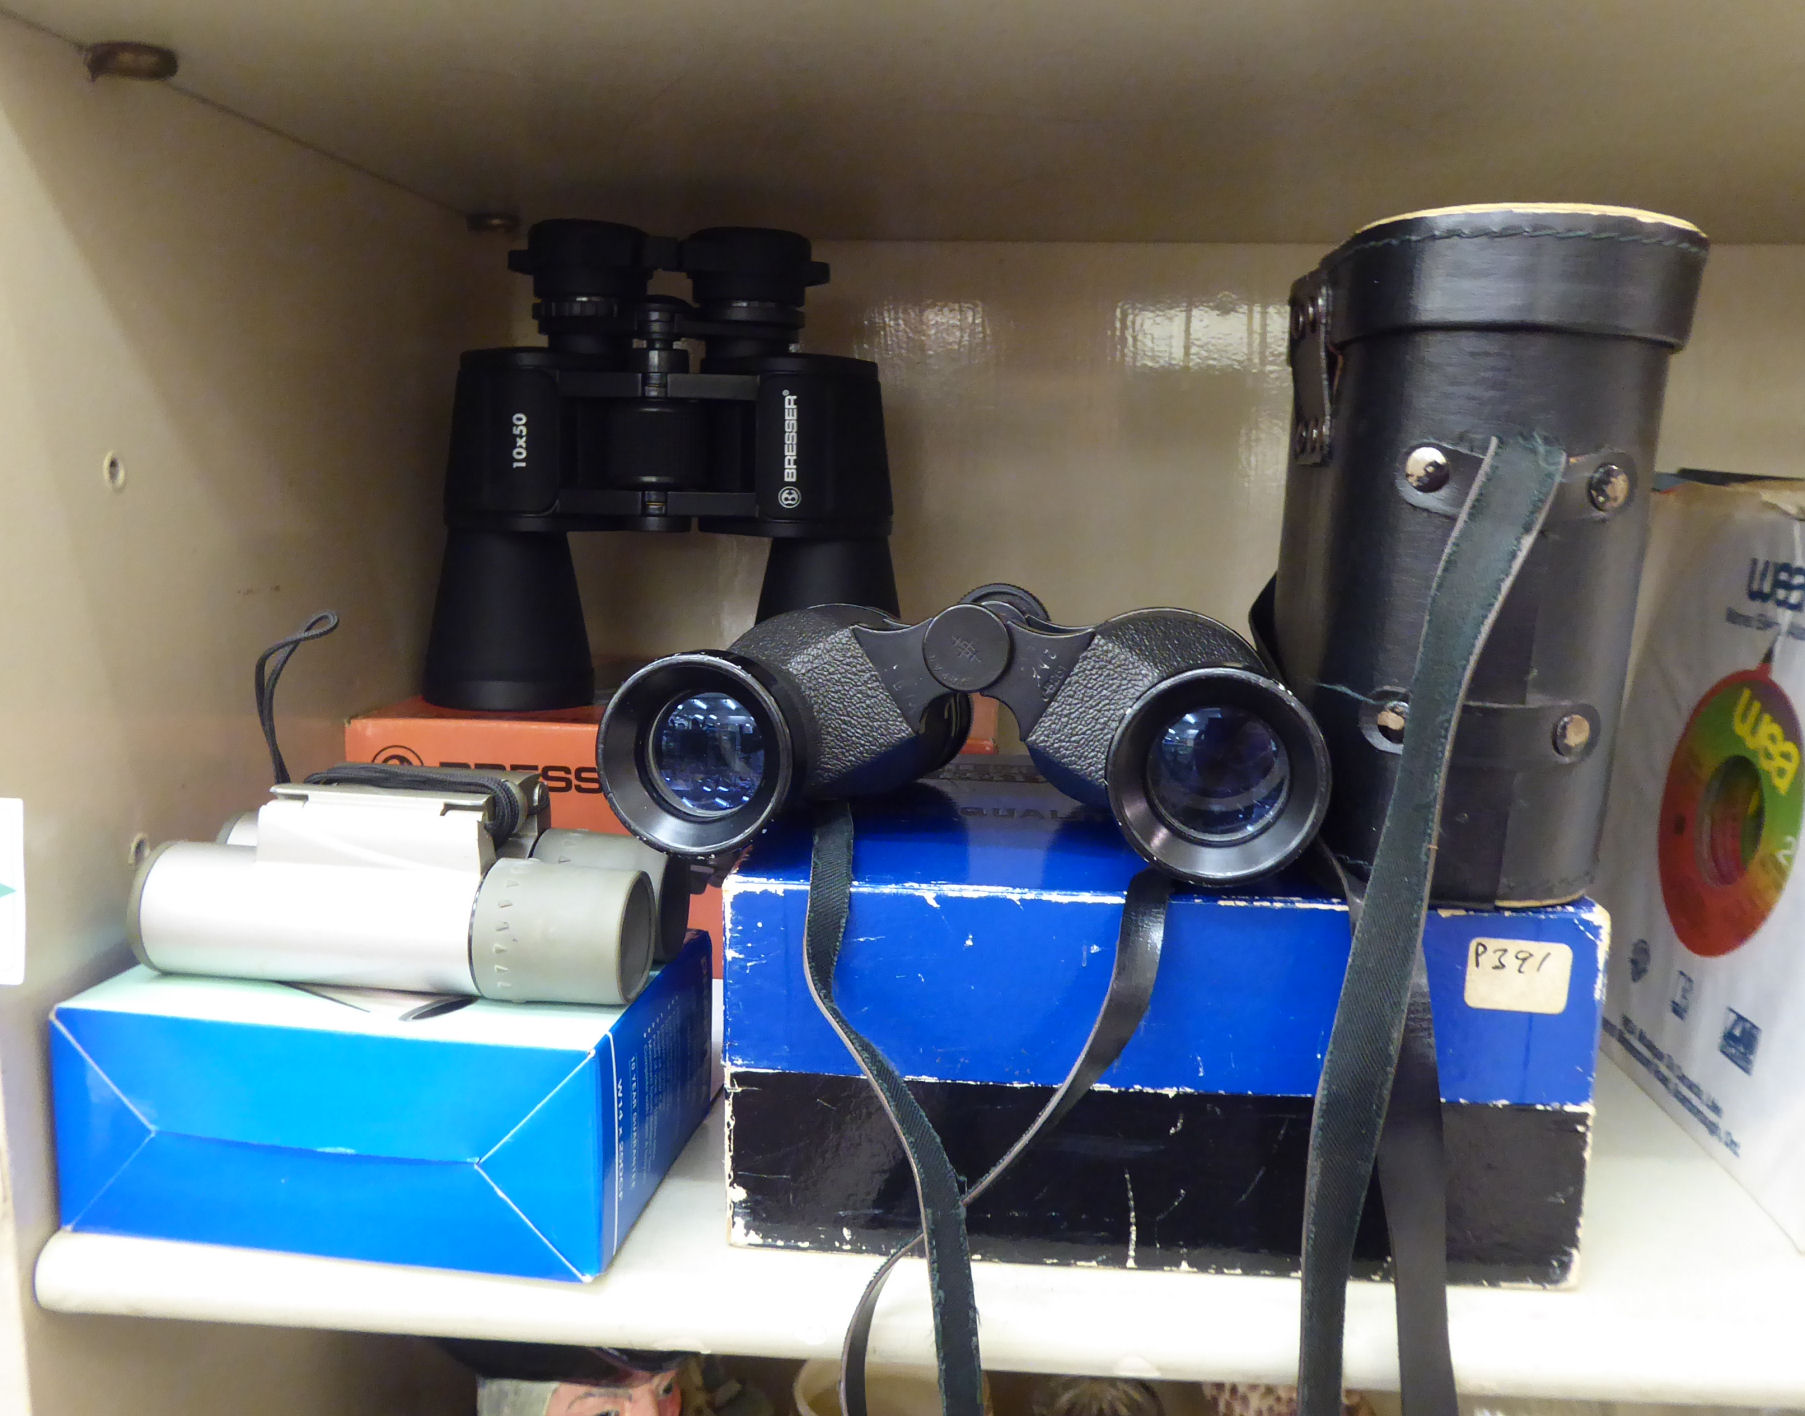 Three pairs of binoculars, viz.